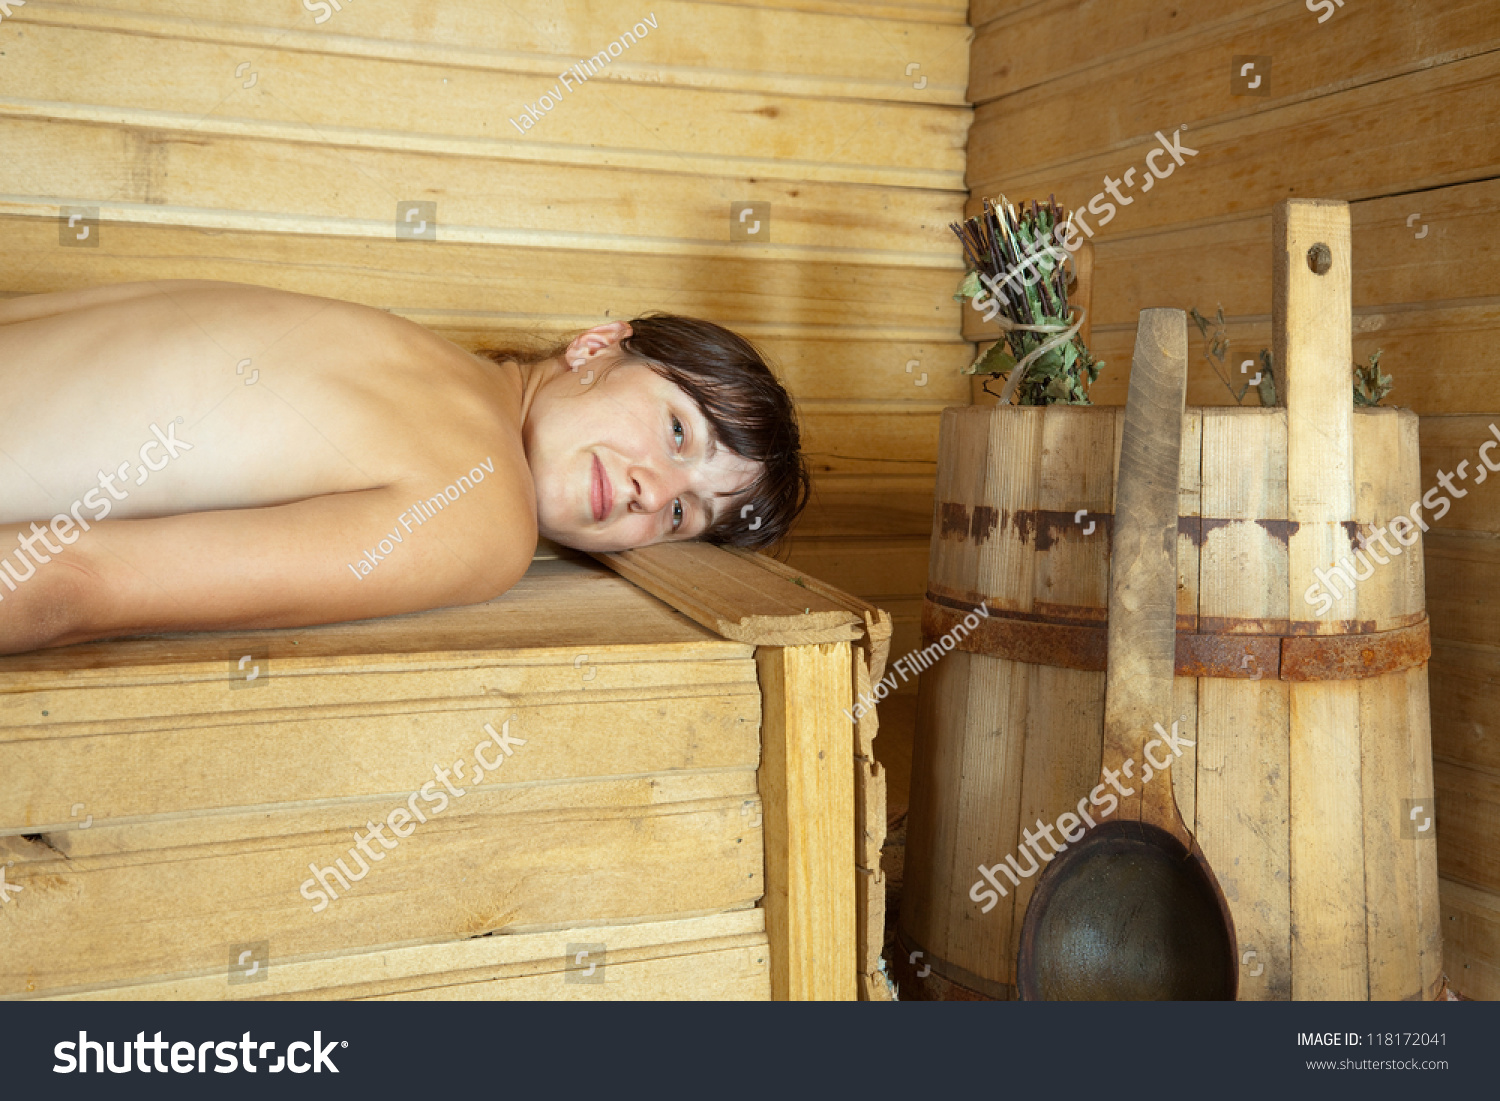 дети в бане с голыми фото 40